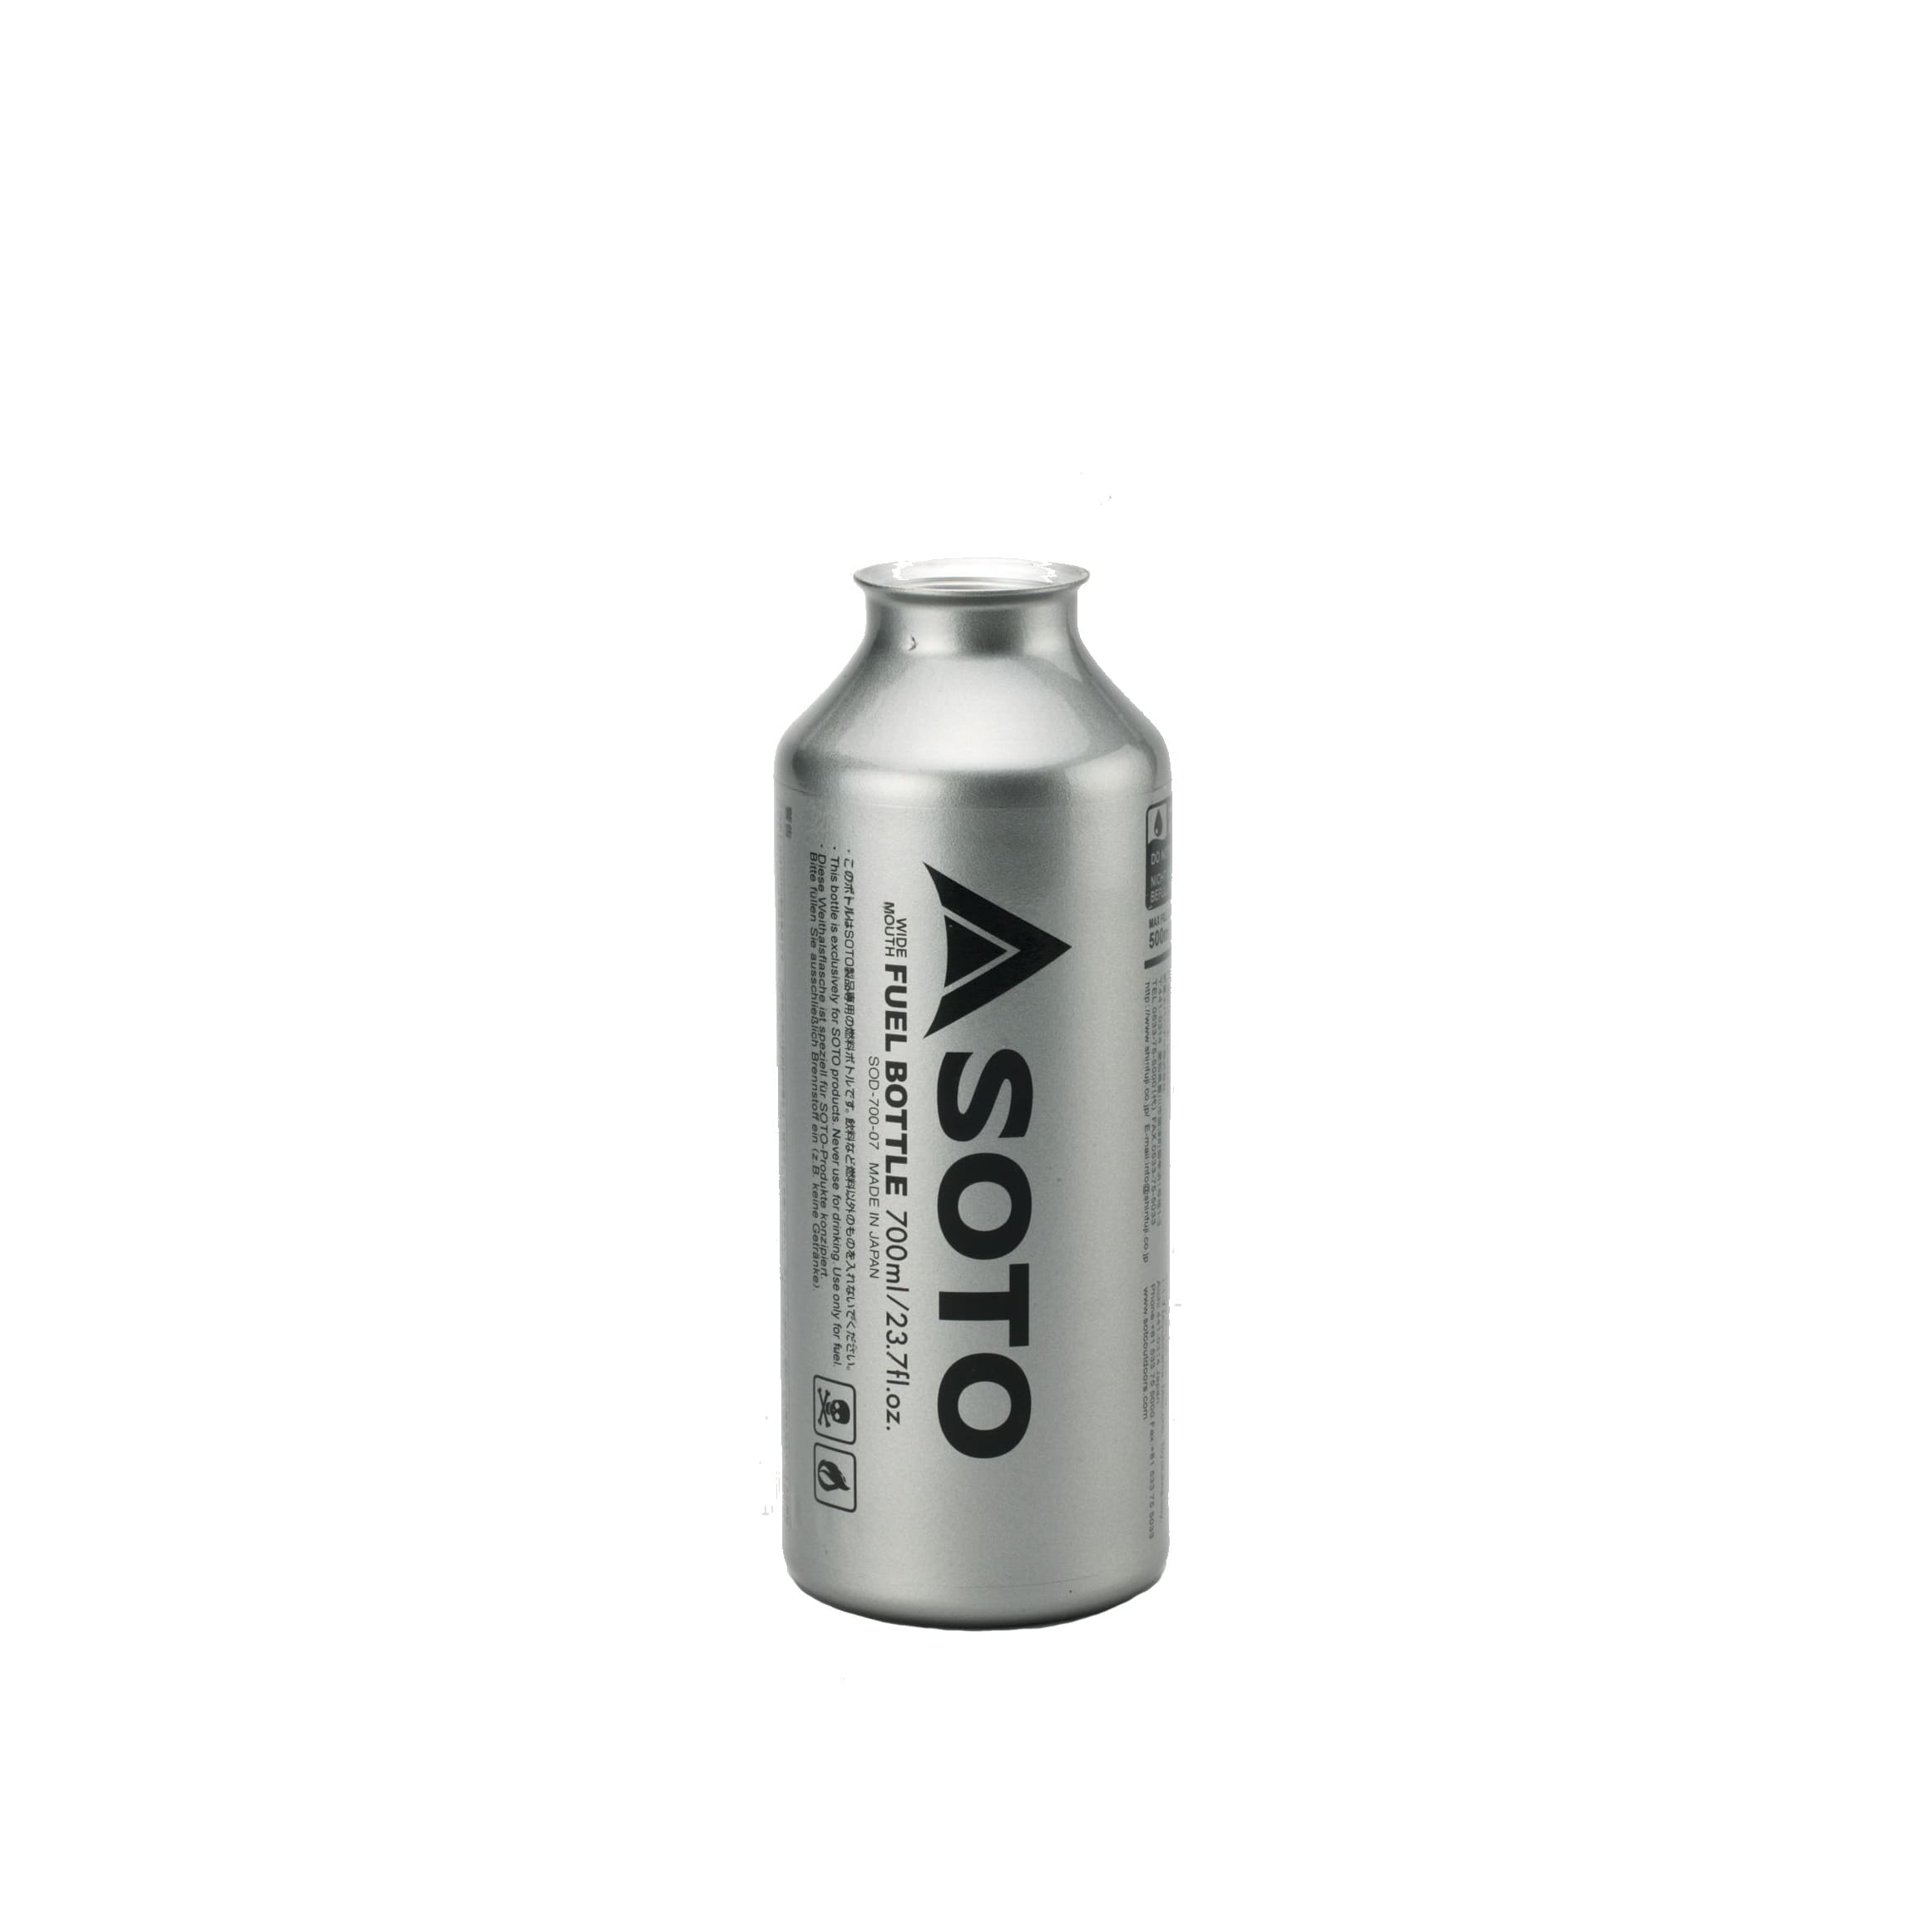 Soto Benzinflasche für Muka - Fuel bottle